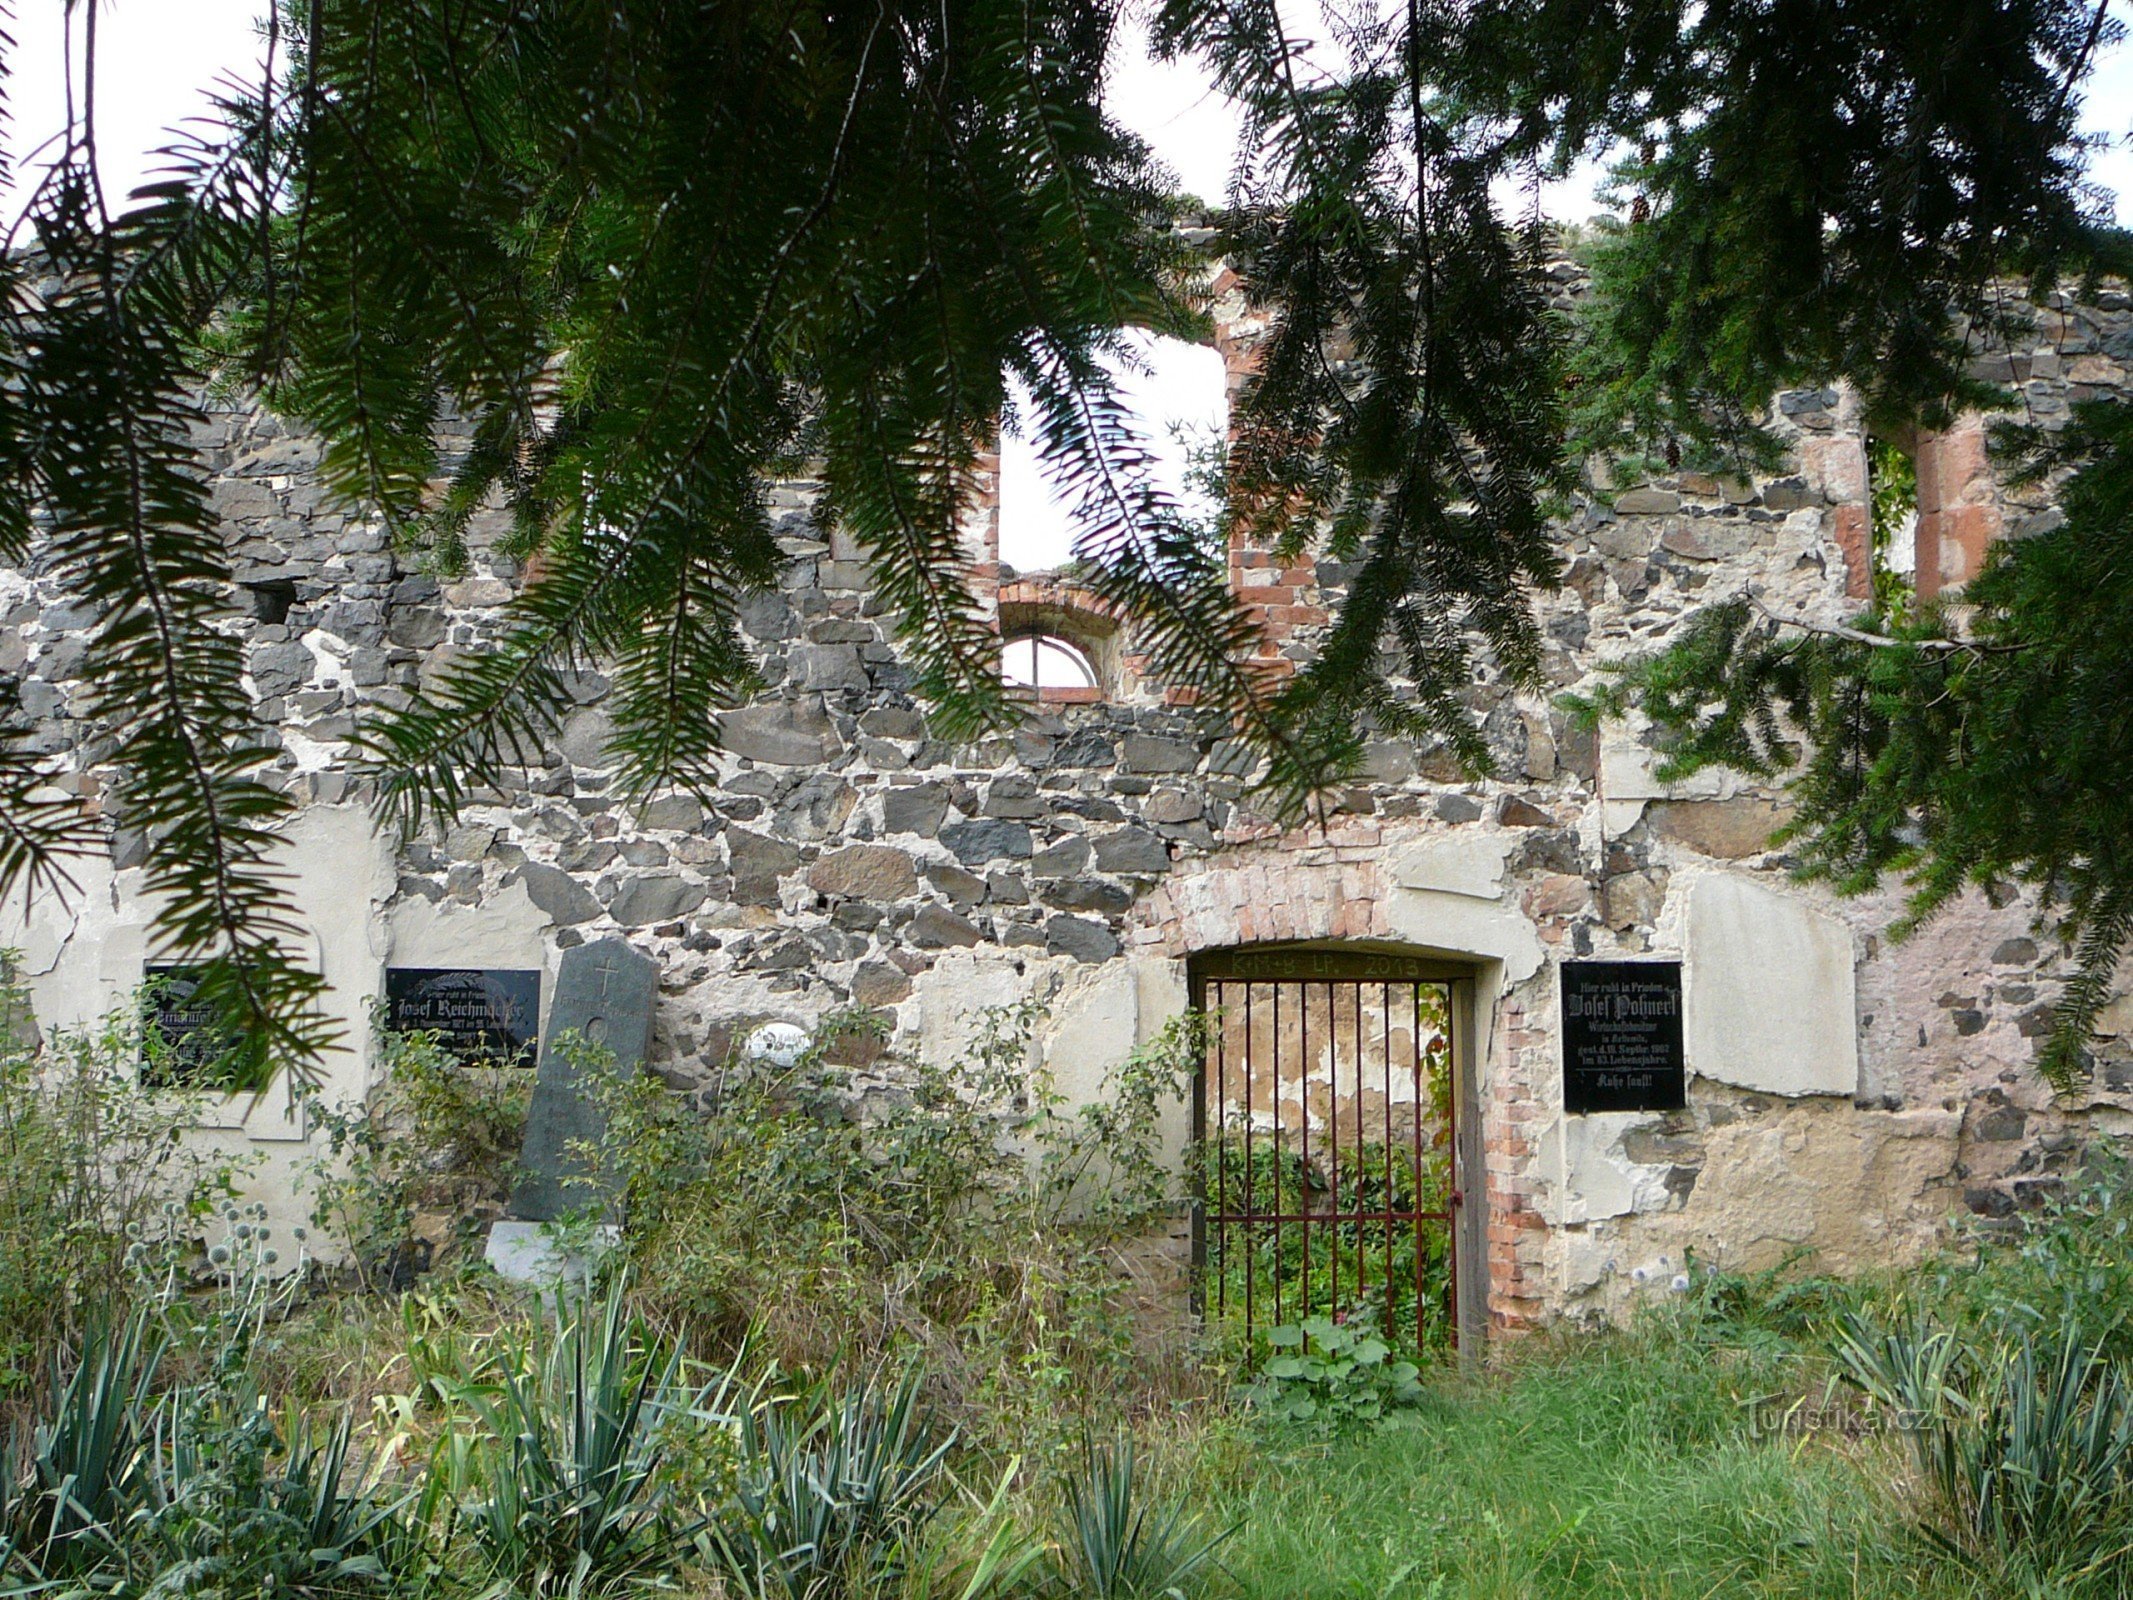 Rovina dall'ingresso del cimitero